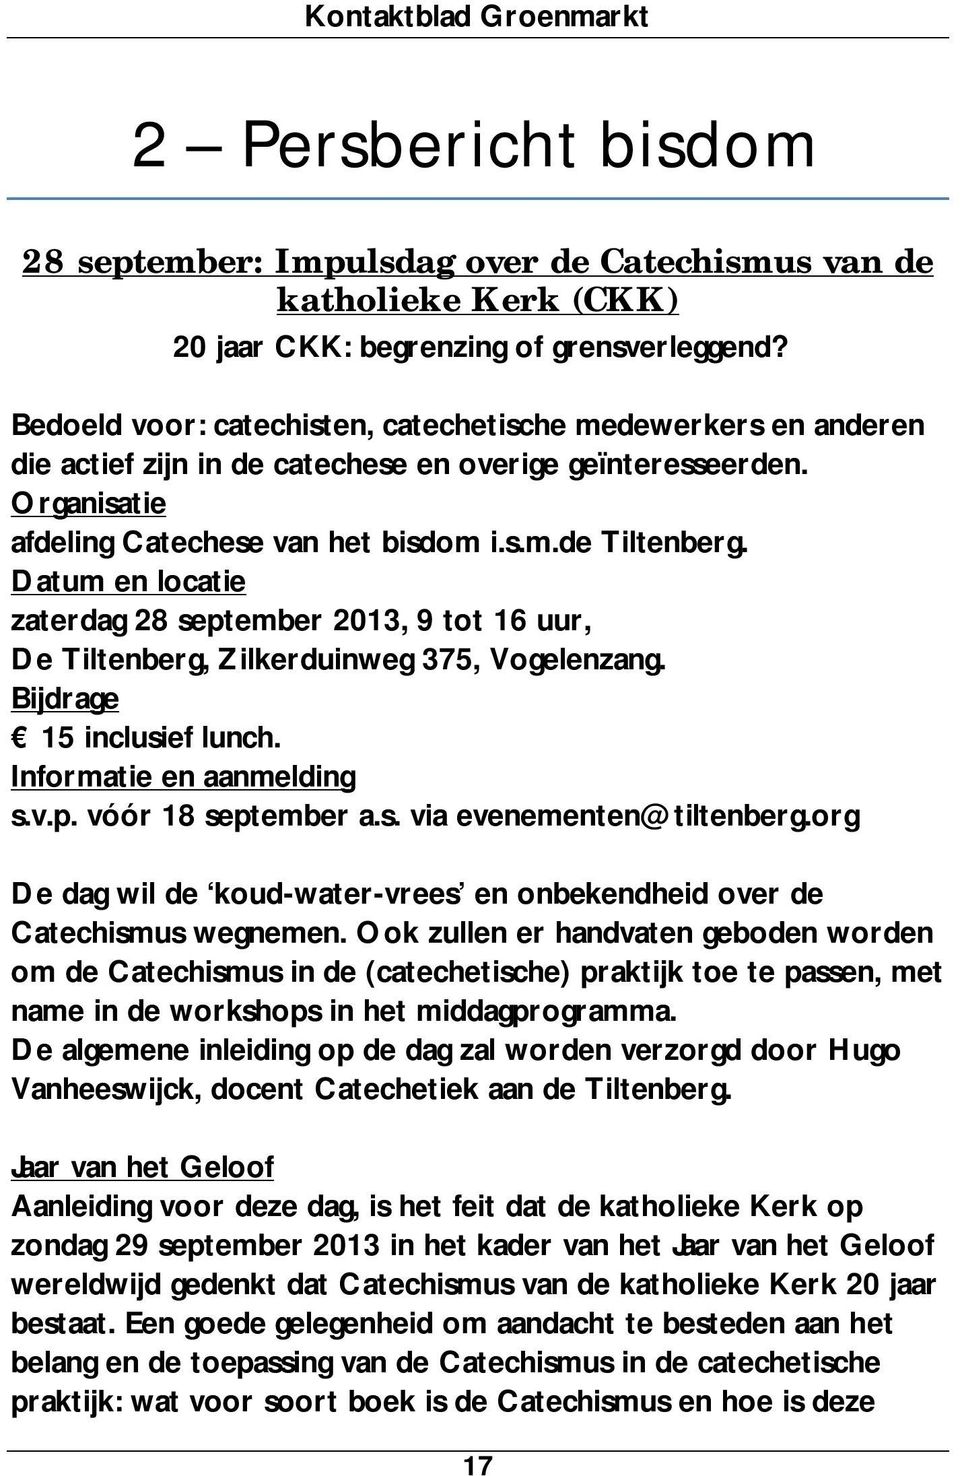 Datum en locatie zaterdag 28 september 2013, 9 tot 16 uur, De Tiltenberg, Zilkerduinweg 375, Vogelenzang. Bijdrage 15 inclusief lunch. Informatie en aanmelding s.v.p. vóór 18 september a.s. via evenementen@tiltenberg.